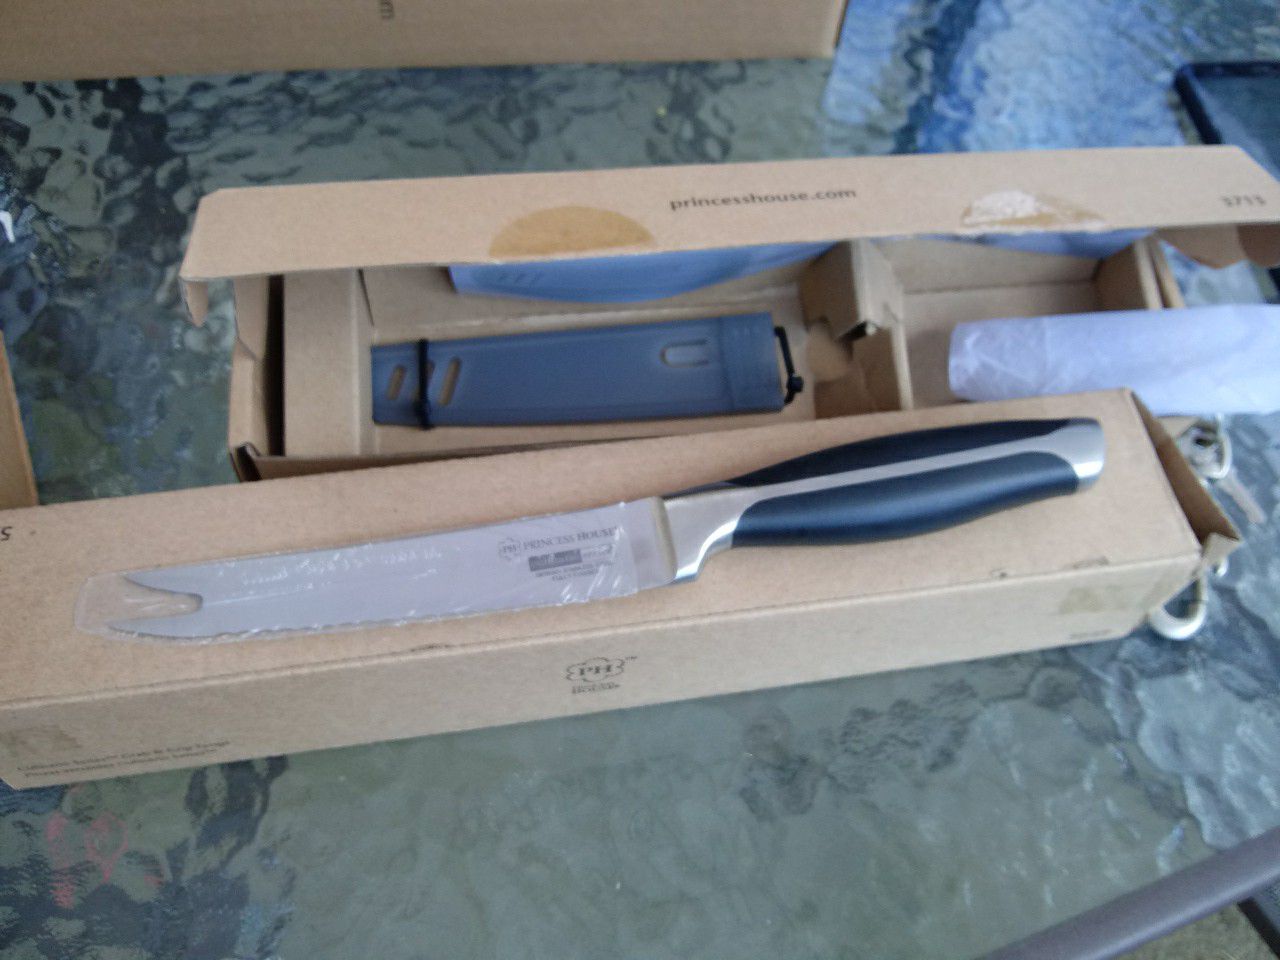 Cuchillo para filetear de 5 serrado princess house nuevo en caja precio firme 40